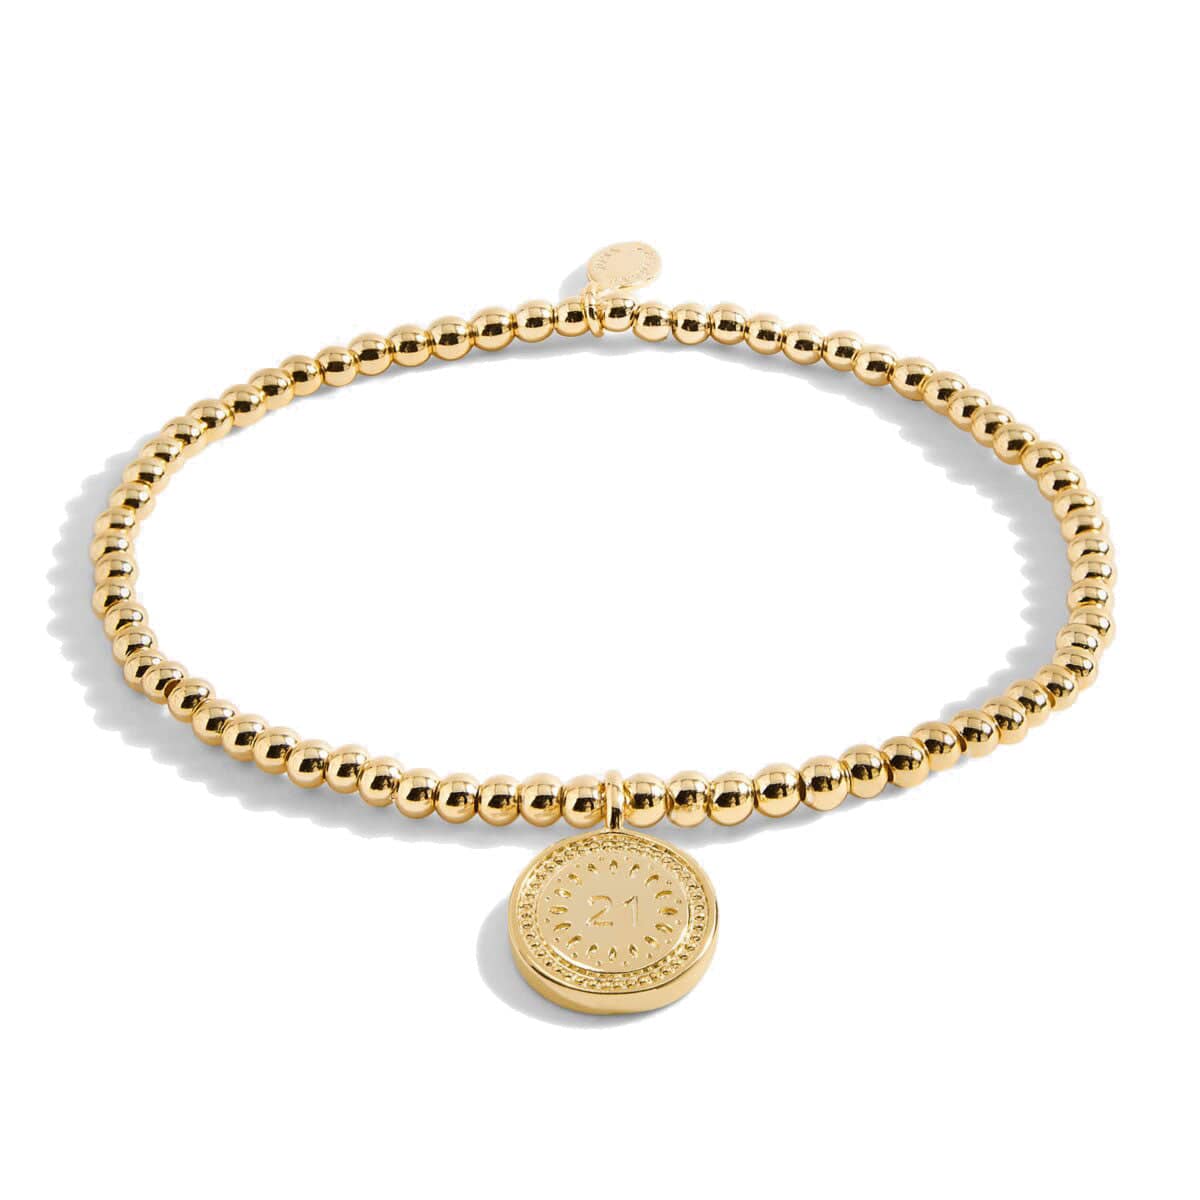 Joma Jewellery Bracelet Joma Jewellery Gold Plated Bracelet - A Little 21st Birthday